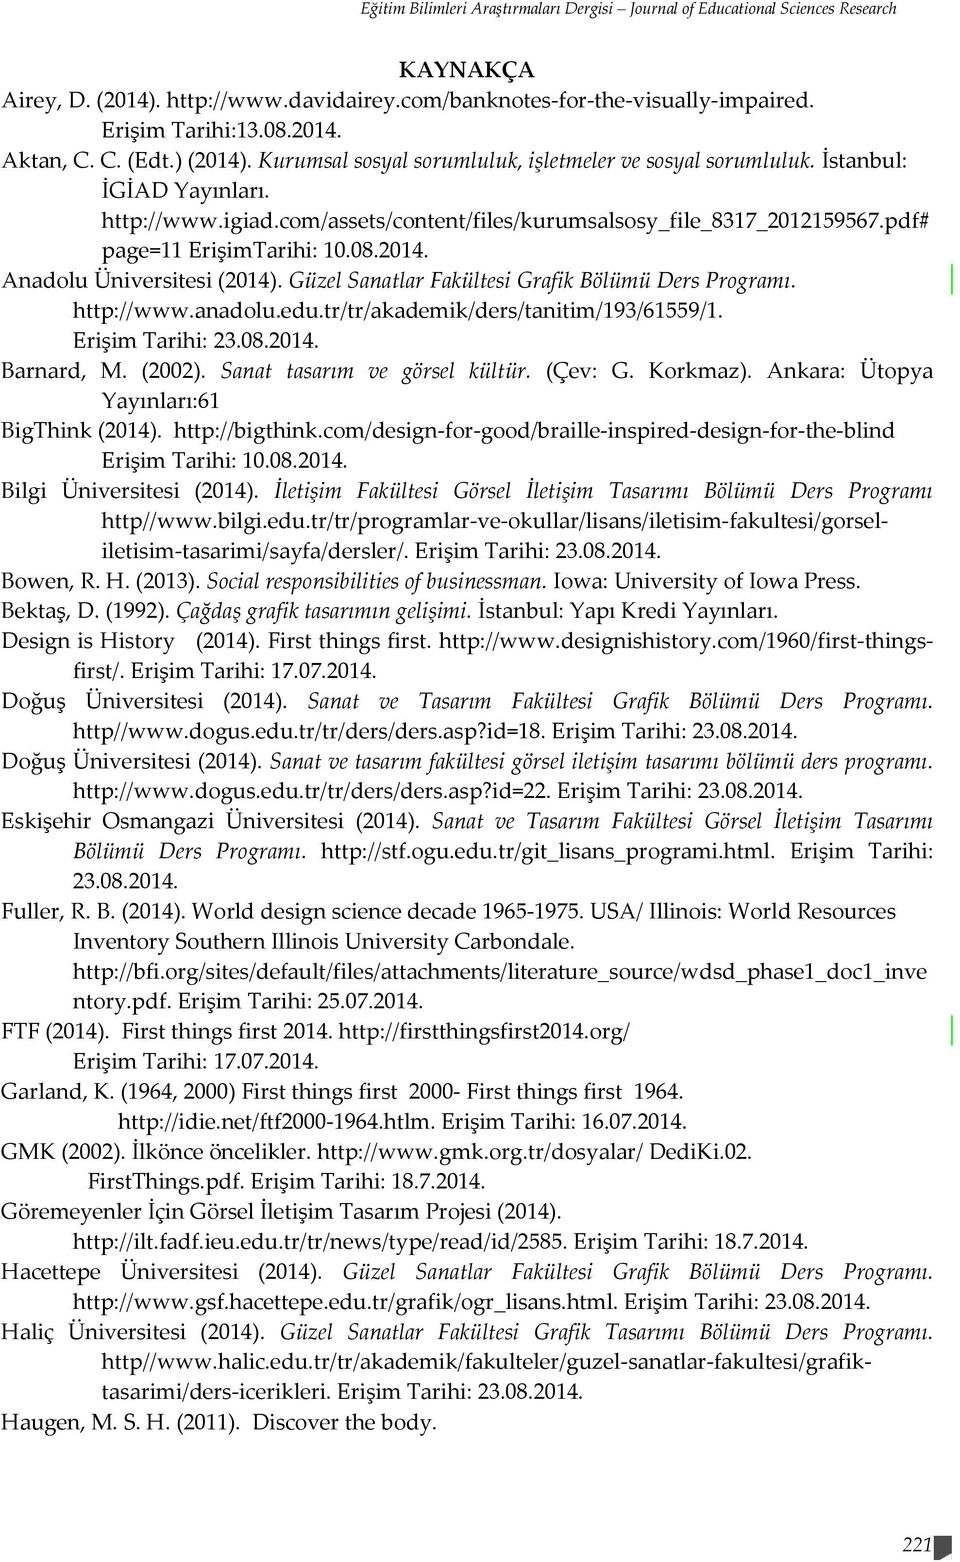 pdf# page=11 ErişimTarihi: 10.08.2014. Anadolu Üniversitesi (2014). Güzel Sanatlar Fakültesi Grafik Bölümü Ders Programı. http://www.anadolu.edu.tr/tr/akademik/ders/tanitim/193/61559/1.